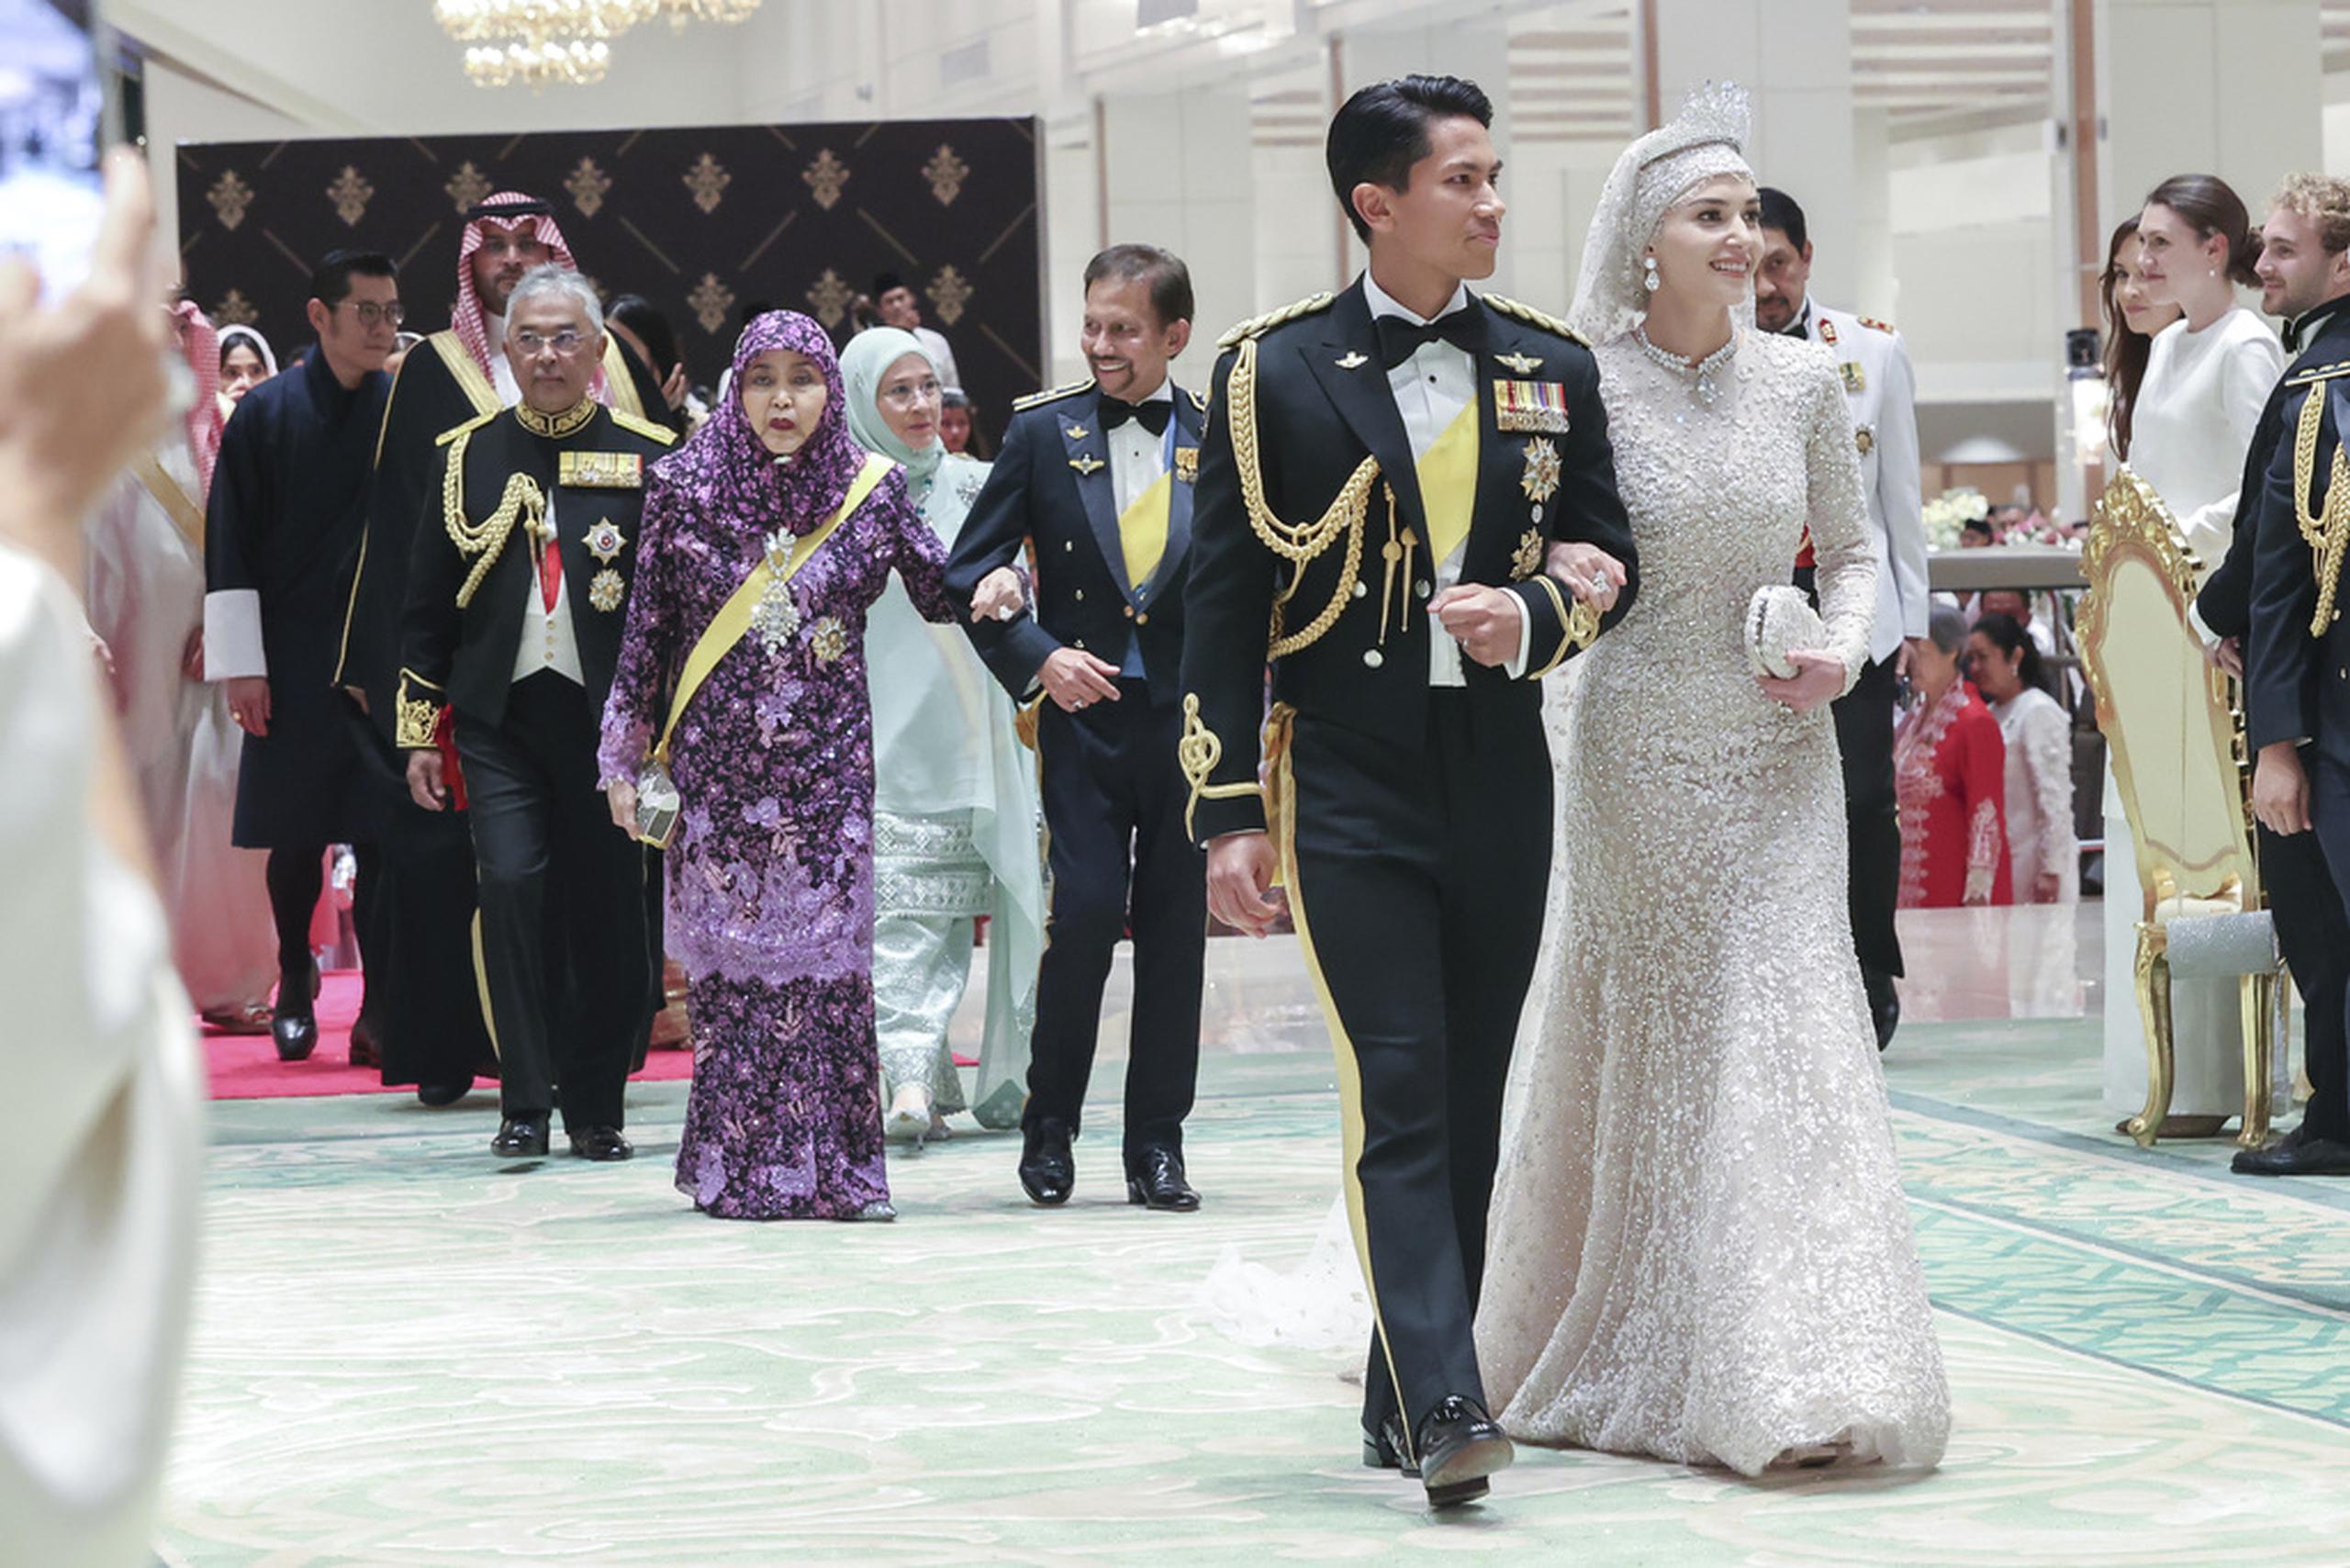 La pareja anunció su compromiso de boda el pasado octubre, lo que provocó un interés por la novia, que es nieta del consejero especial del sultán Hassanal Bolkiah, Pehin Dato Isa, y estudió en la Universidad de Bath en Reino Unido, según la revista “Squire”.